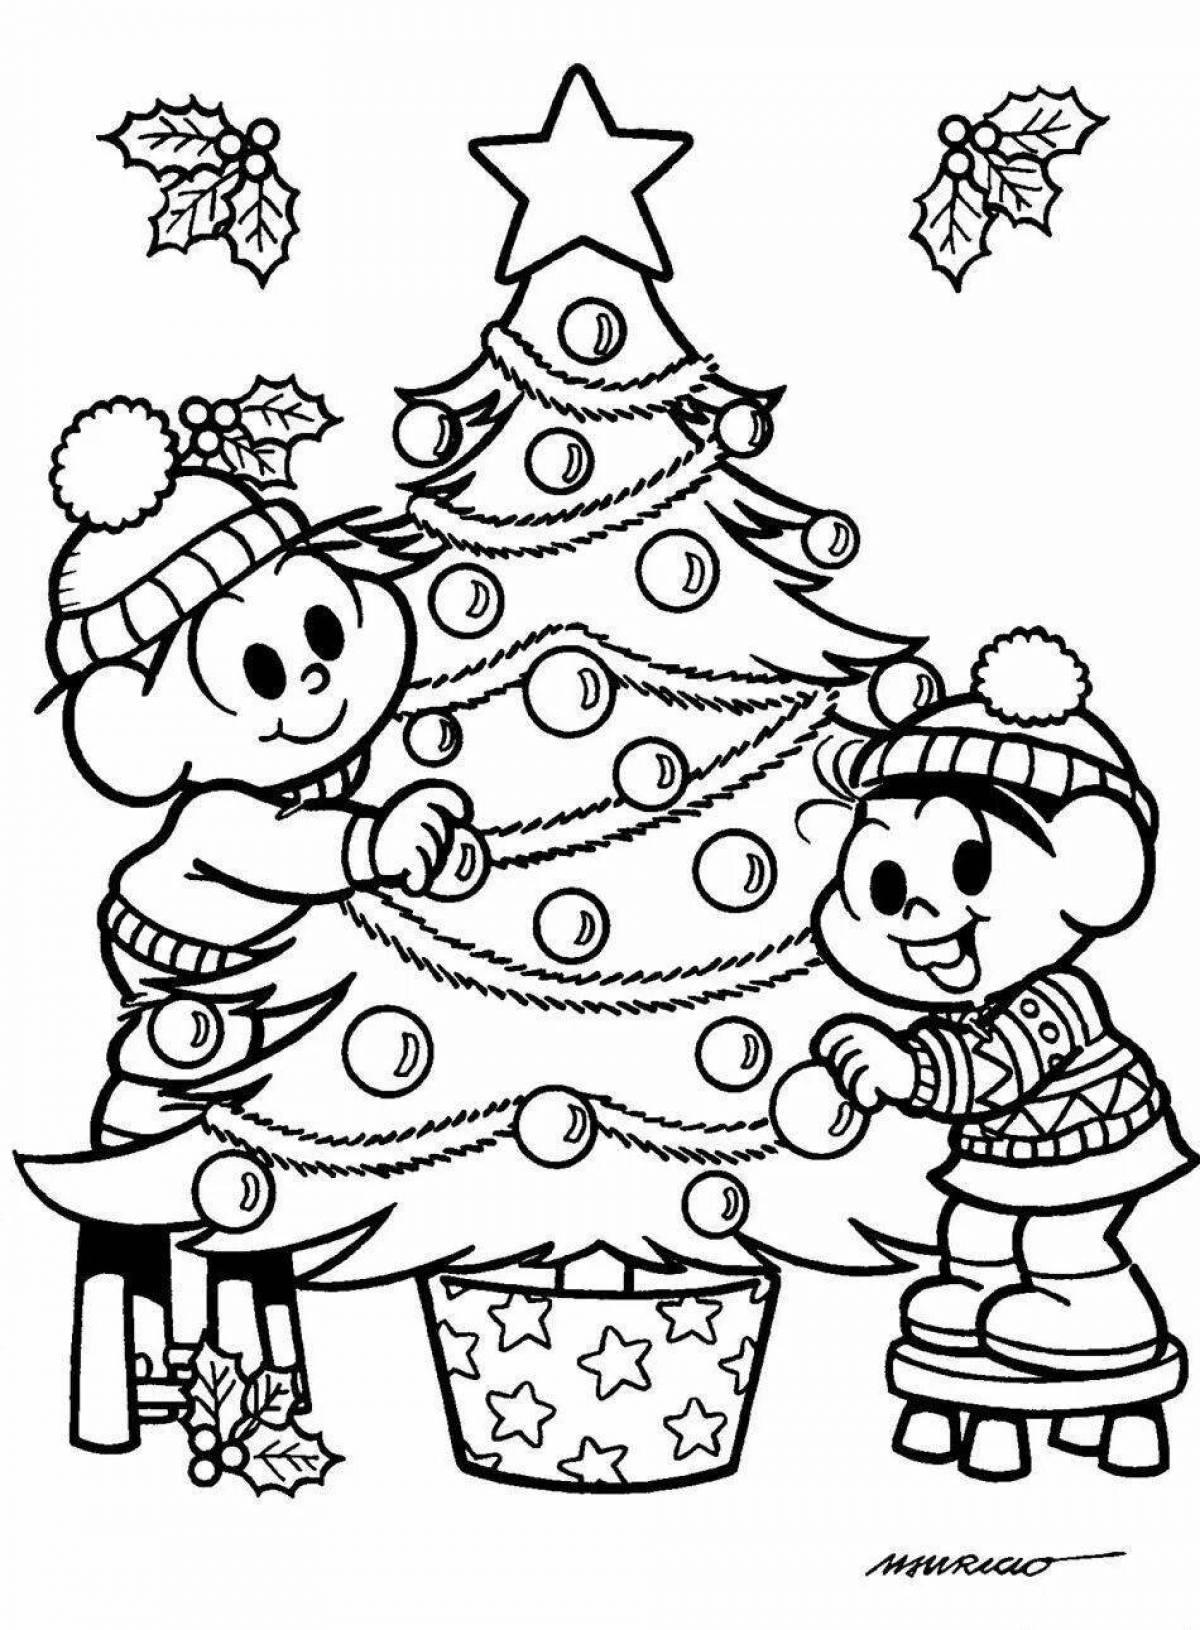 Игривая страница раскраски рождественской елки для детей 5-6 лет